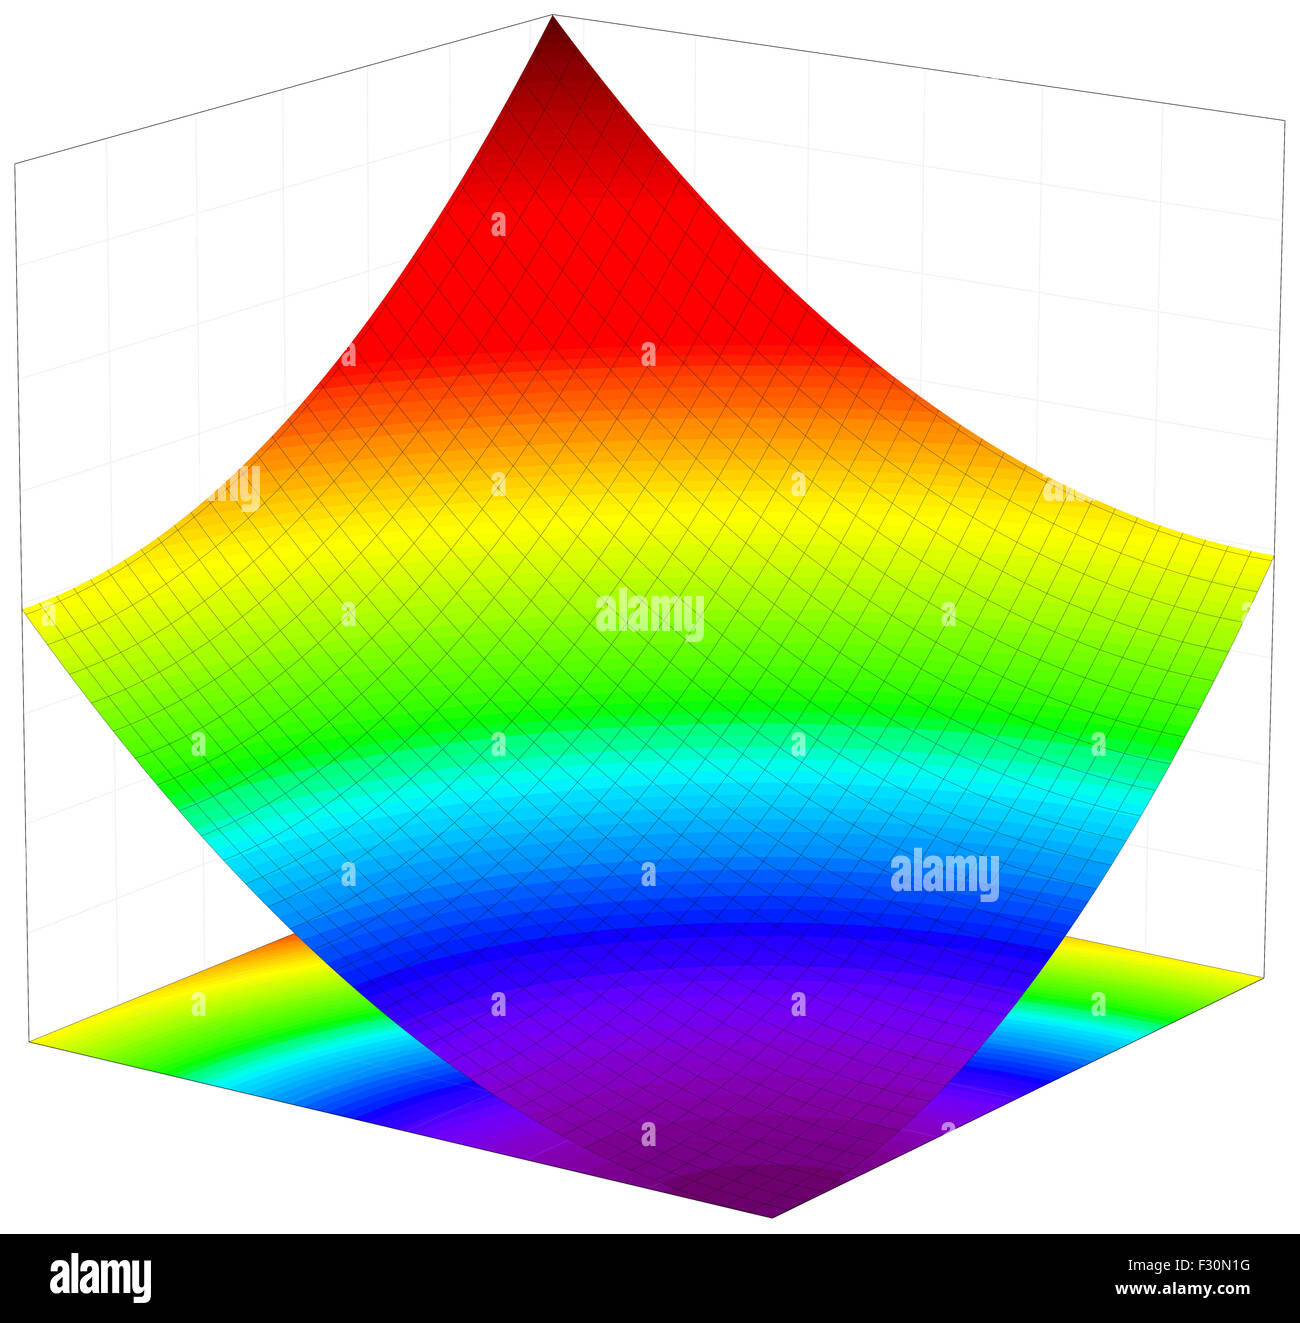 Colorato 3d dimentional superficie grafico di una funzione matematica Foto Stock